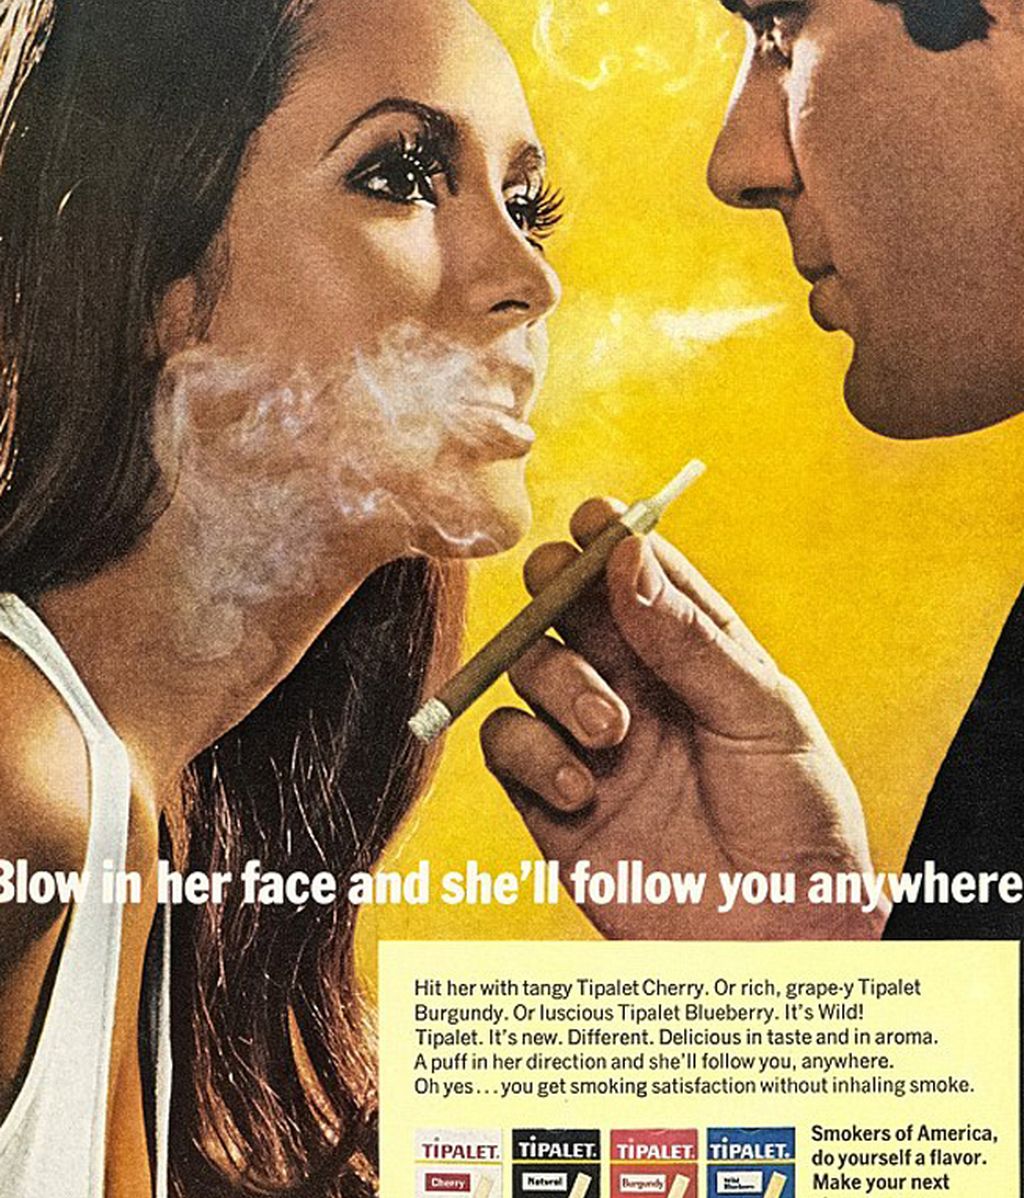 ¿Crees que la publicidad ha dejado de ser tan sexista como hace décadas?